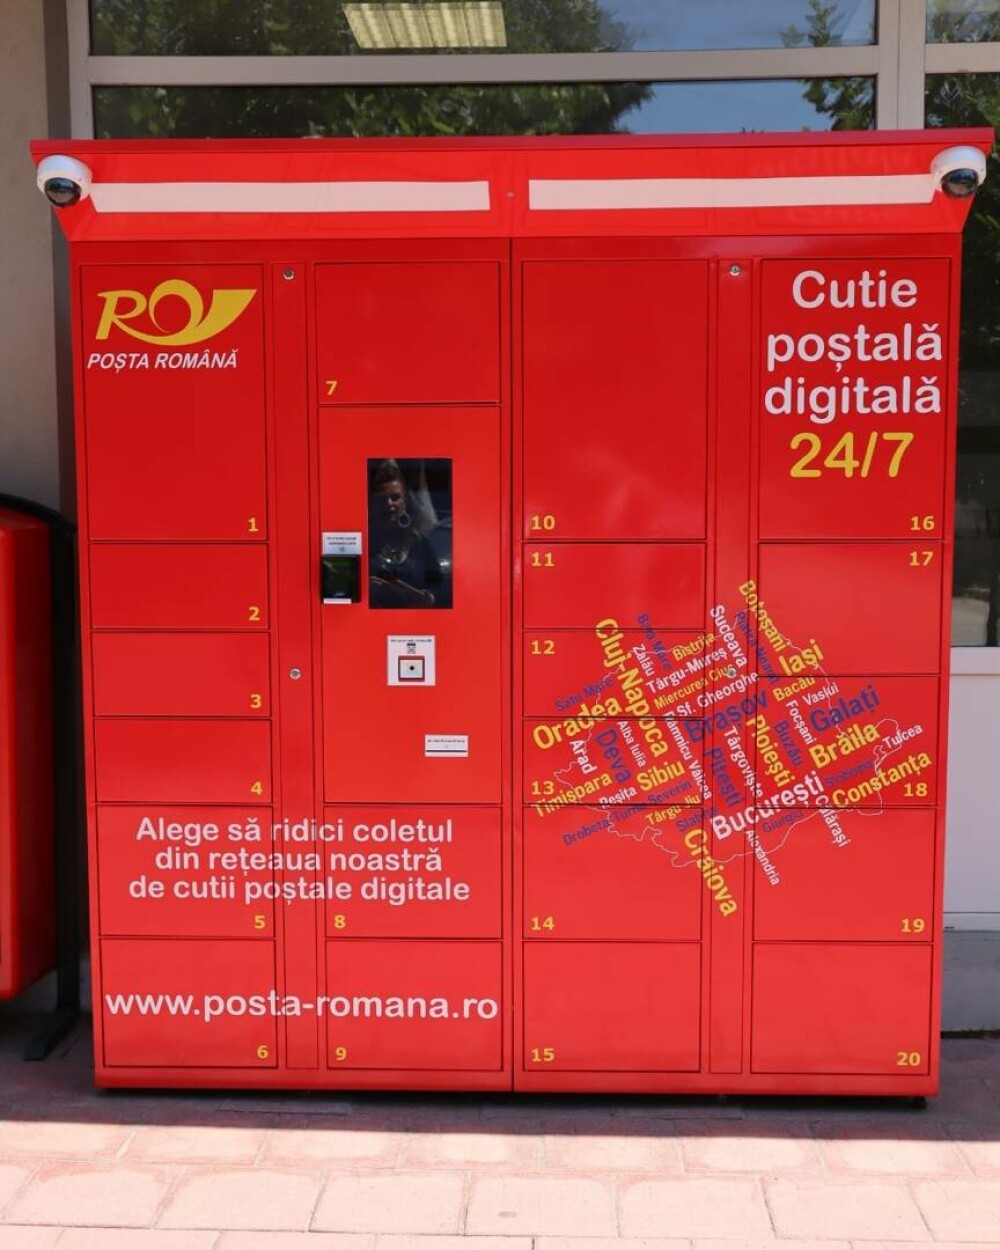 Poşta Română se modernizează. Primele cutii poştale digitale cu program non-stop. GALERIE FOTO - Imaginea 2